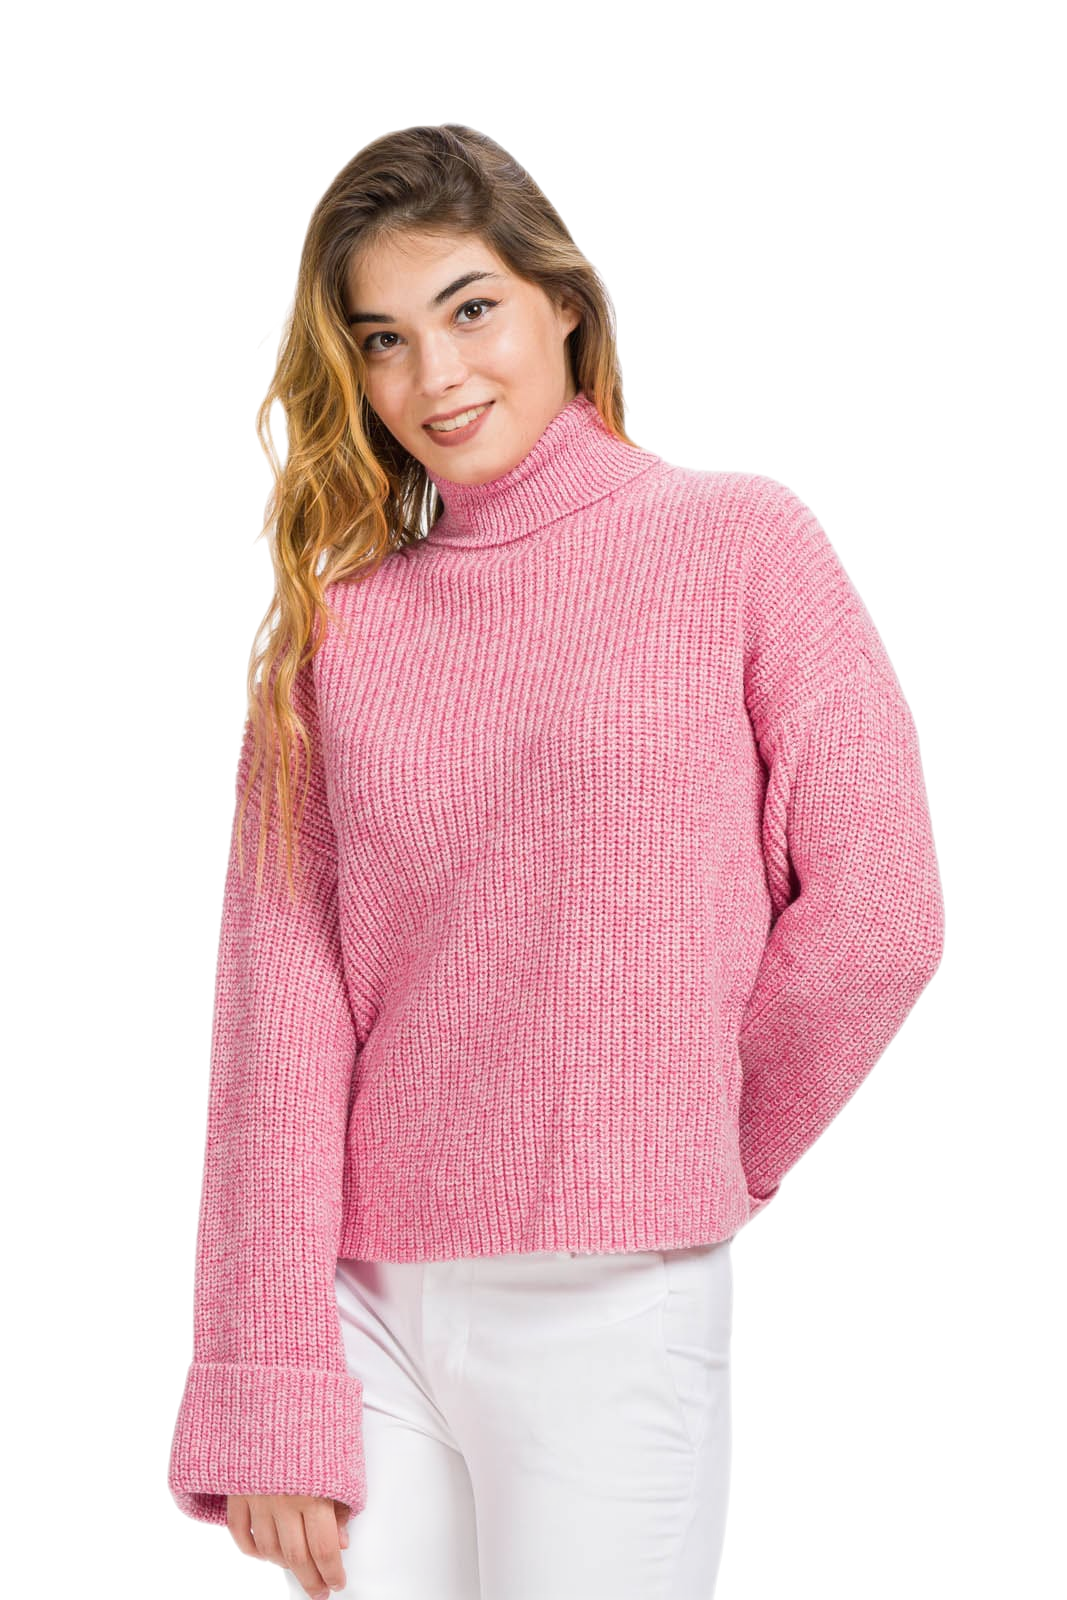 Maglione donna a collo alto in lana merino rosa